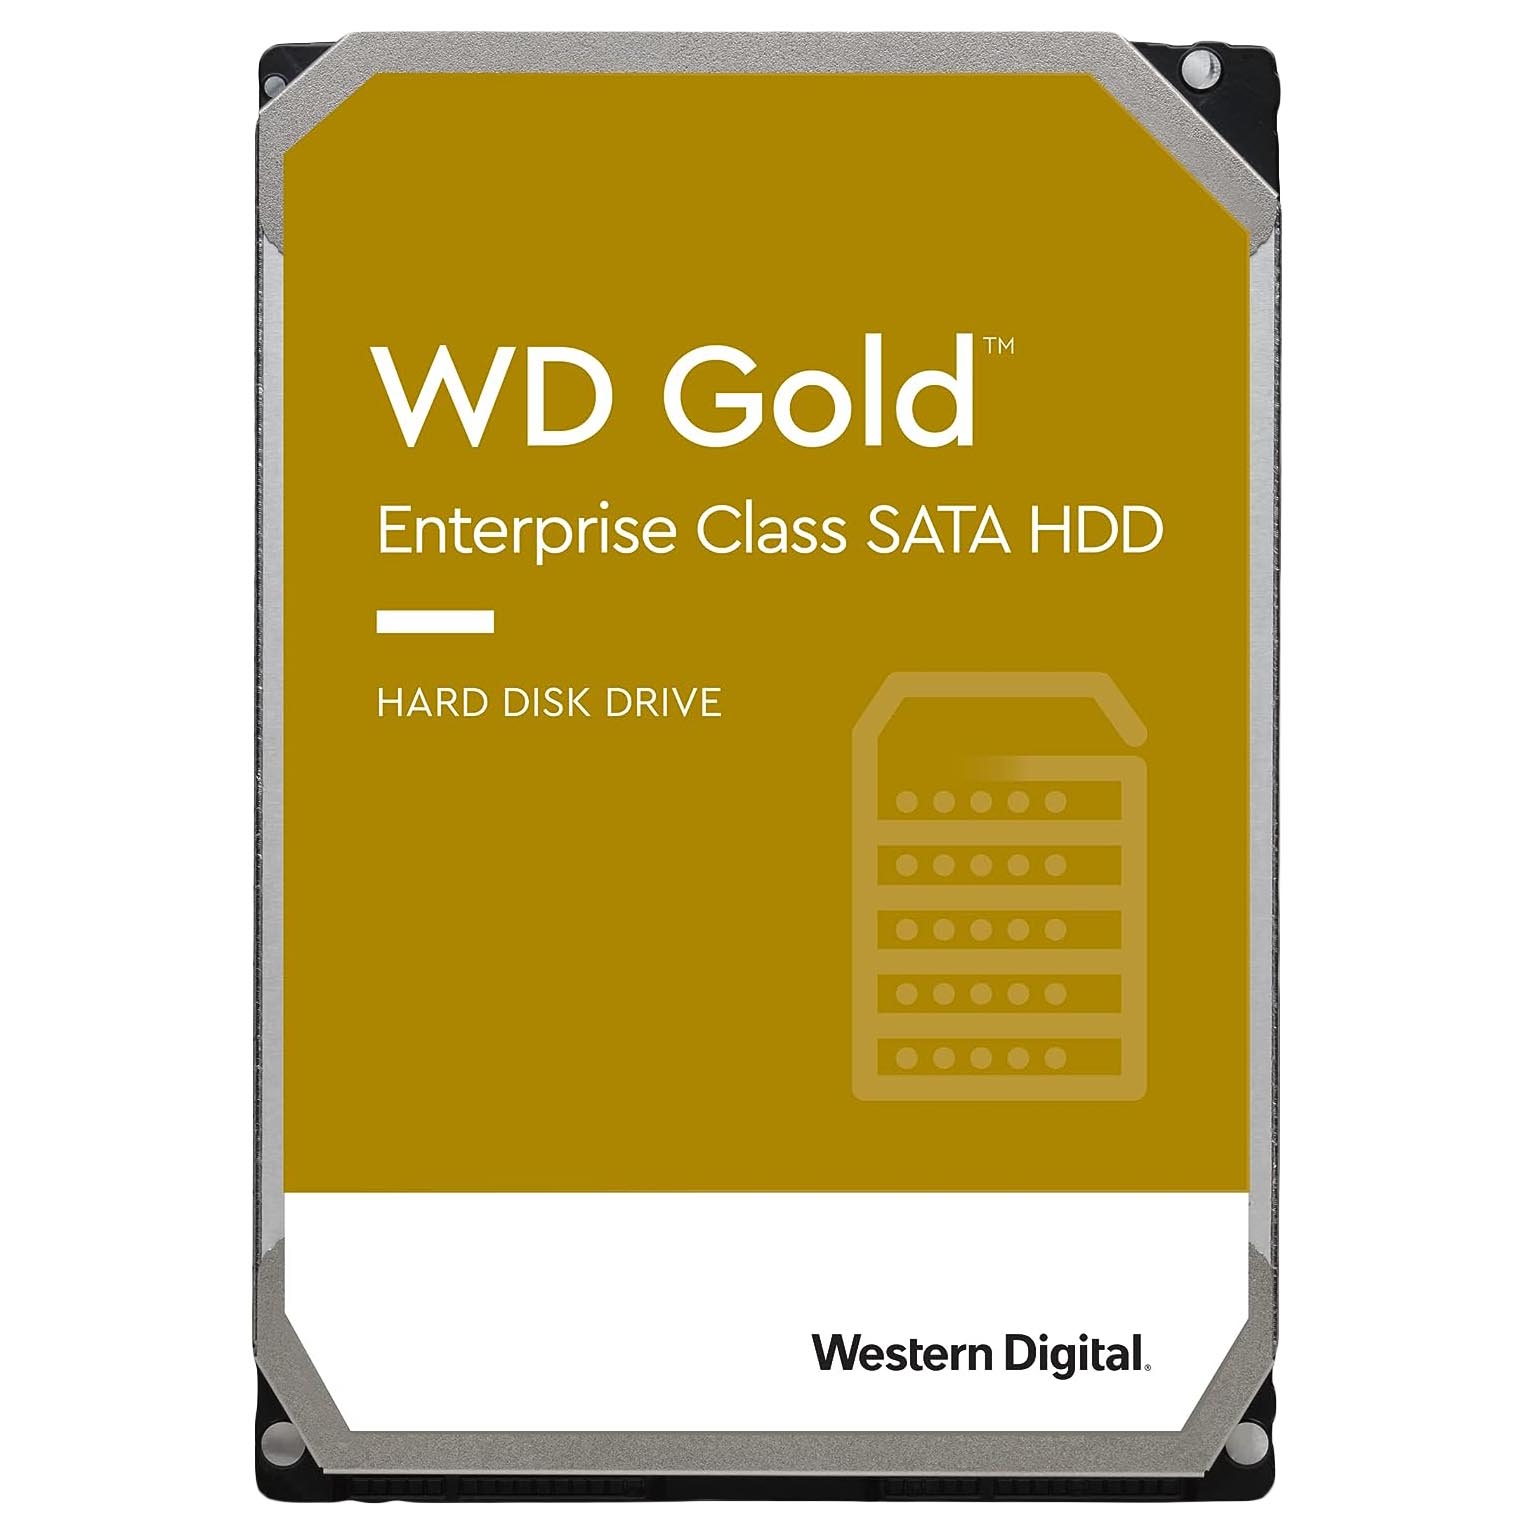 Внутренний жесткий диск Western Digital WD Gold Enterprise Class, WD4003VRYZ, 4Тб внутренний жесткий диск western digital gold 3 5 8 тб wd8004fryz